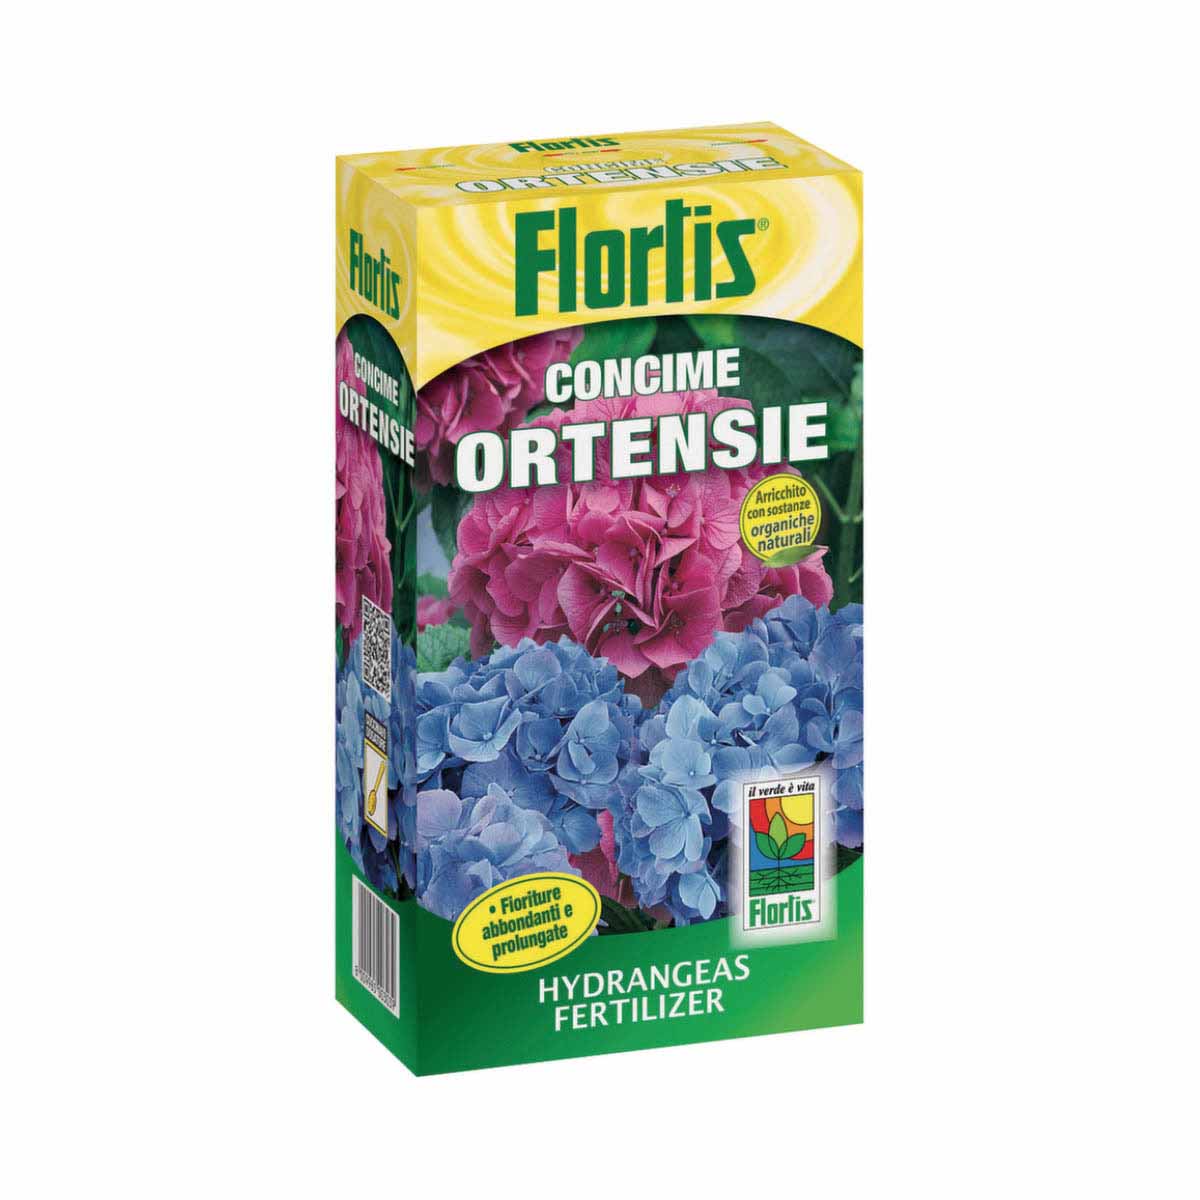 Flortis Ortensie concime pellet